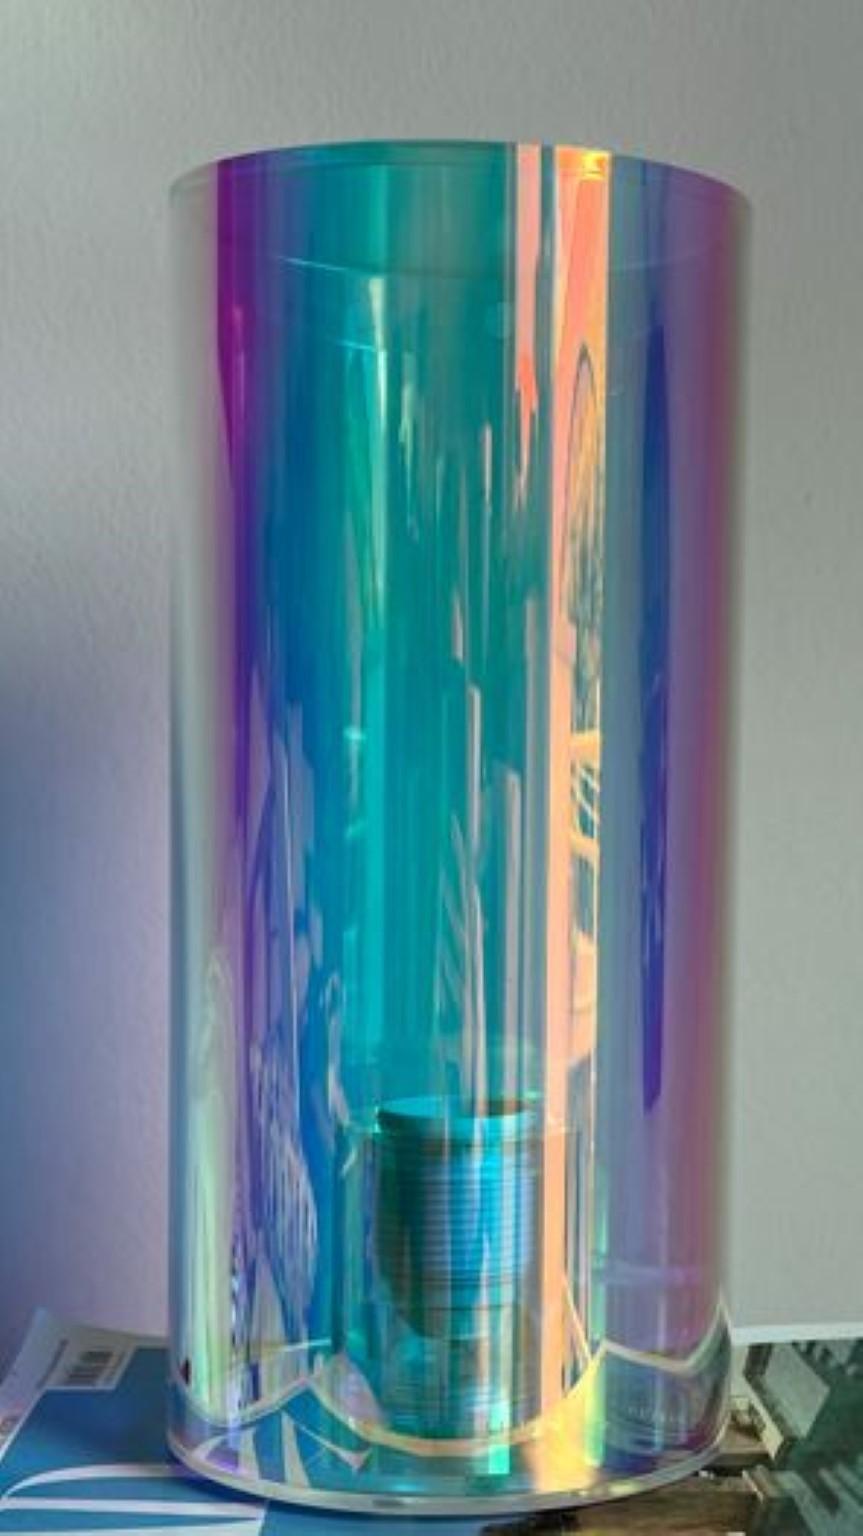 Holographische tischlampe von Brajak Vitberg
Abmessungen: B 14 x T 14 x H 30 cm
MATERIAL: Plexiglas + dichroitische Folie.

Bijelic und Brajak sind zwei Architekten aus Ljubljana, Slowenien.
Sie sind bestrebt, handwerkliche Elemente zu